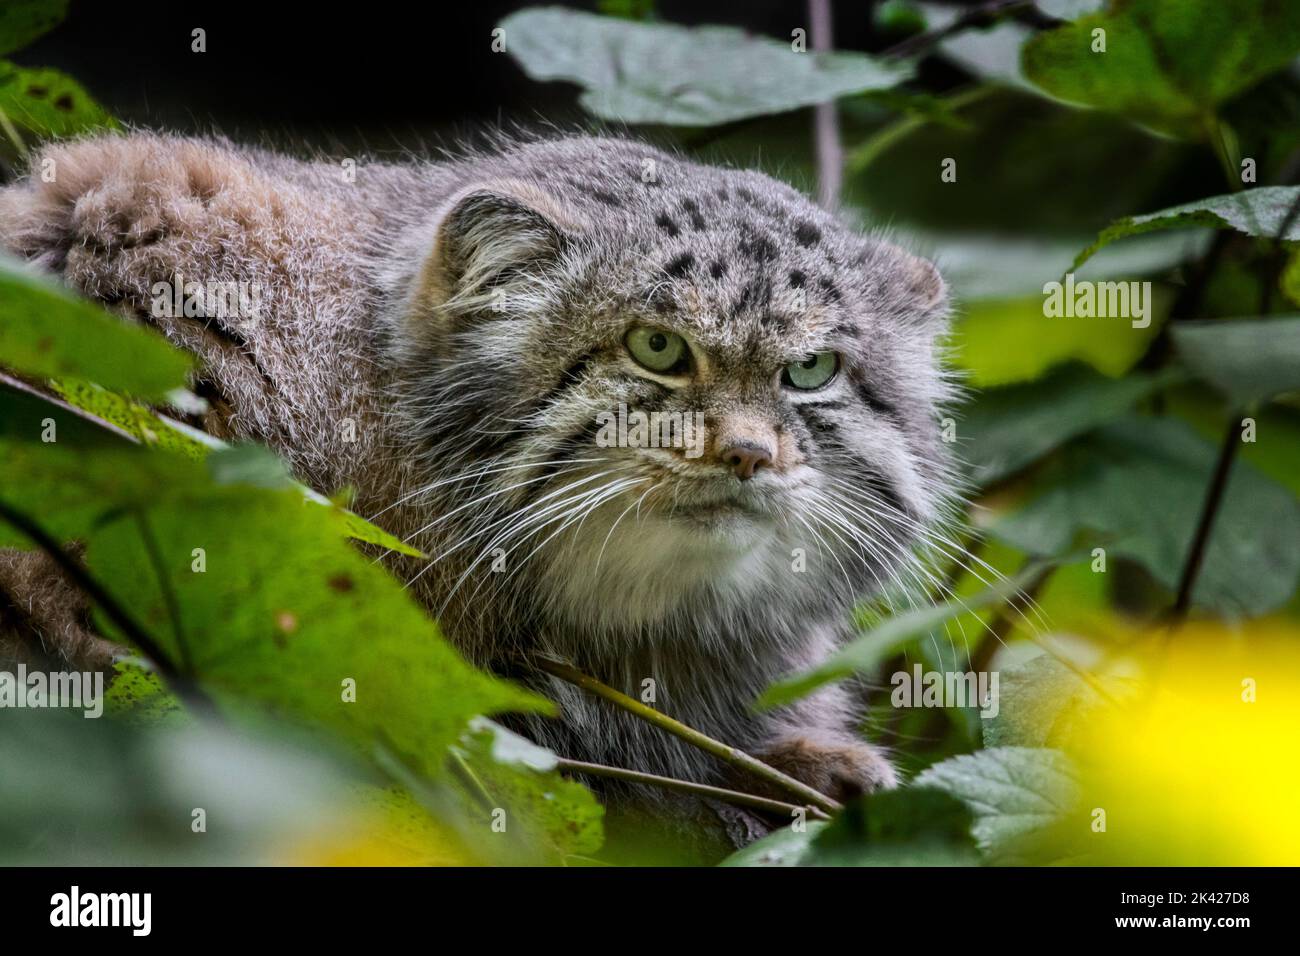 Gatto di Pallas / manul (Otocolobus manul) gatto selvatico originario del Caucaso, Asia centrale, Mongolia e l'altopiano tibetano Foto Stock